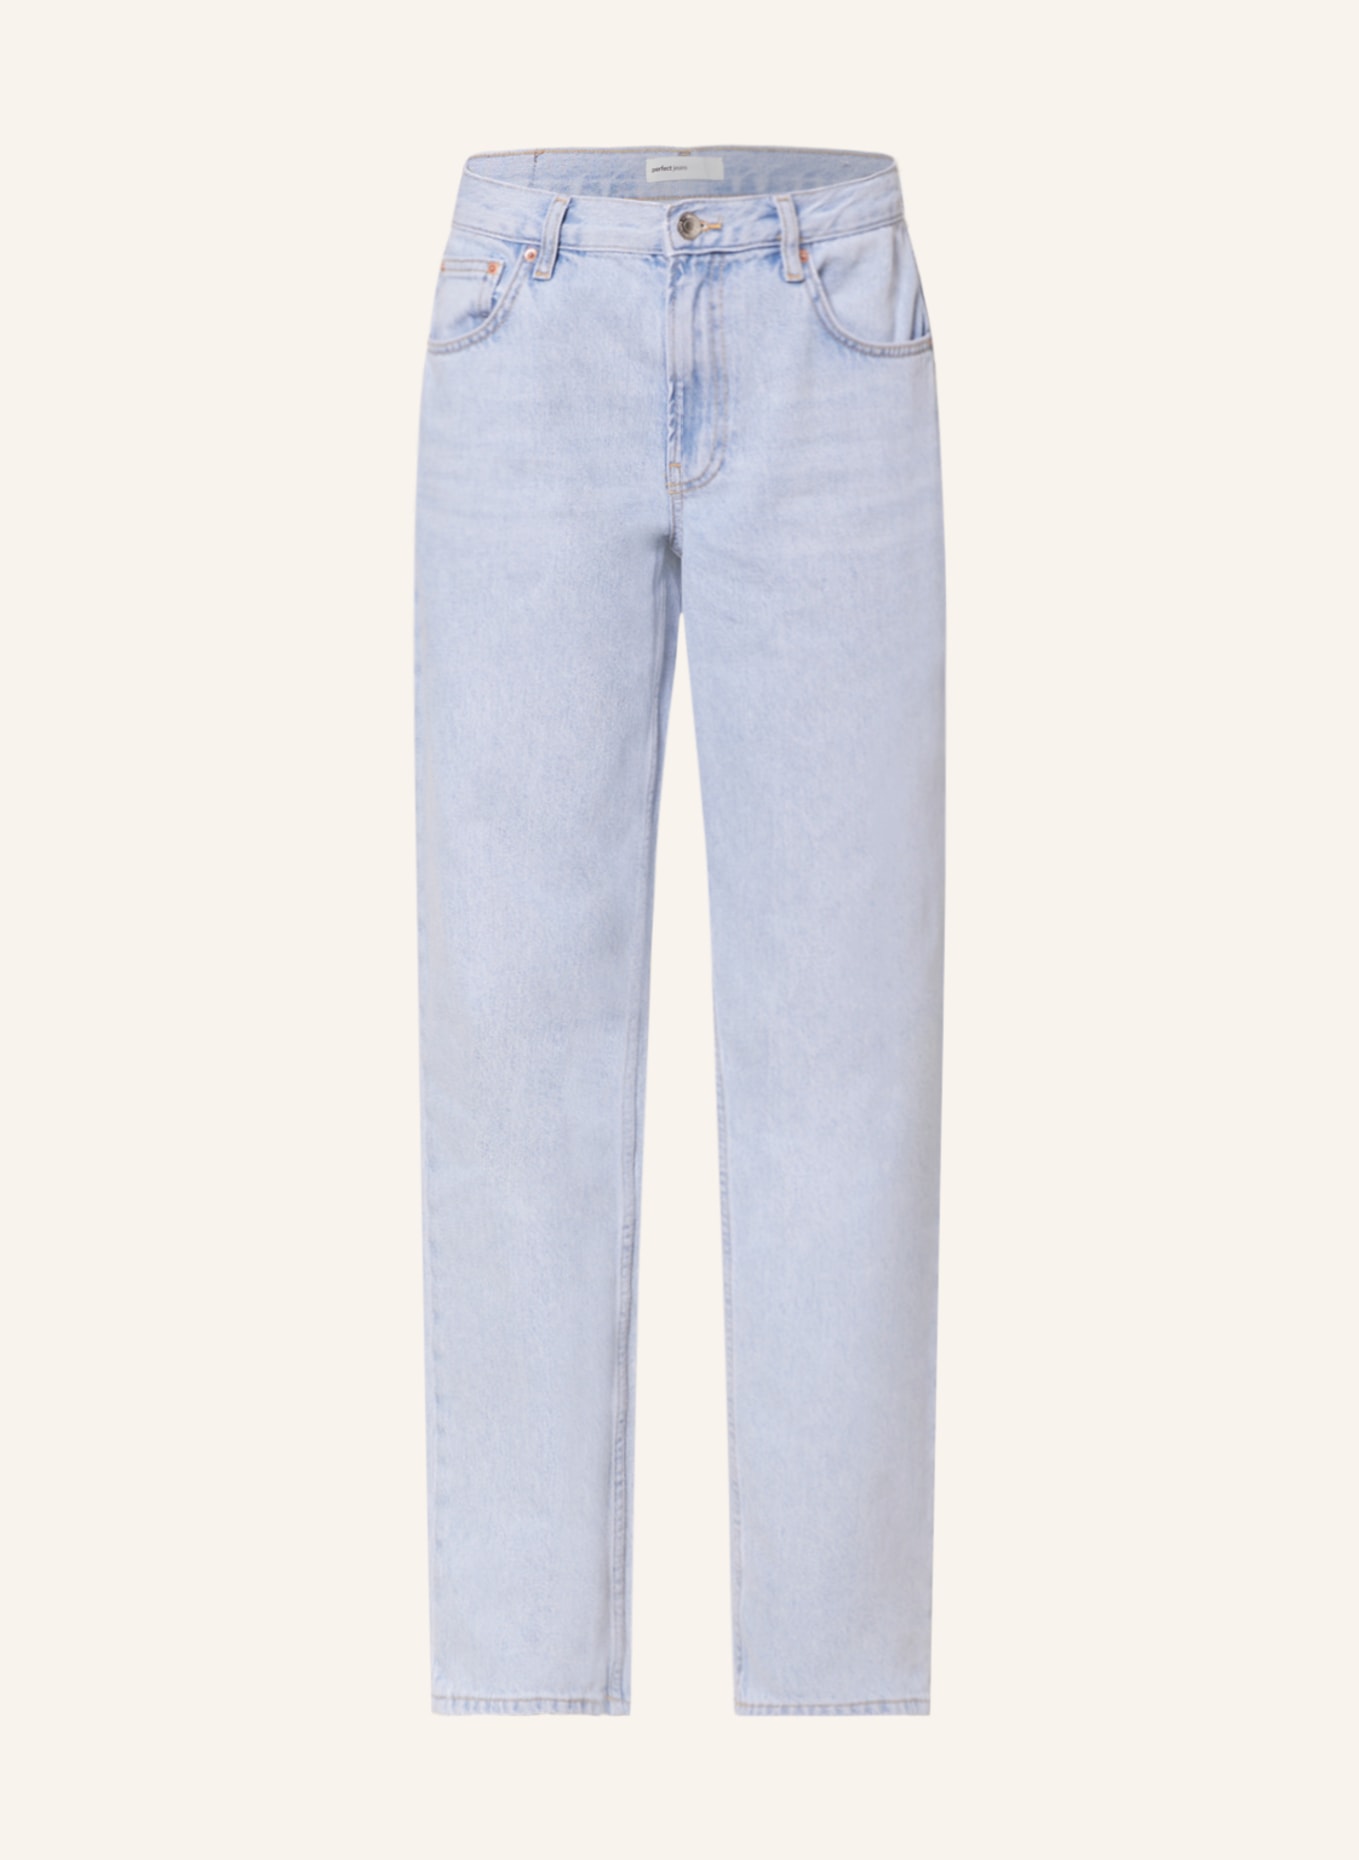 gina tricot Boyfriend Jeans, Farbe: 5973 Pale blue (Bild 1)